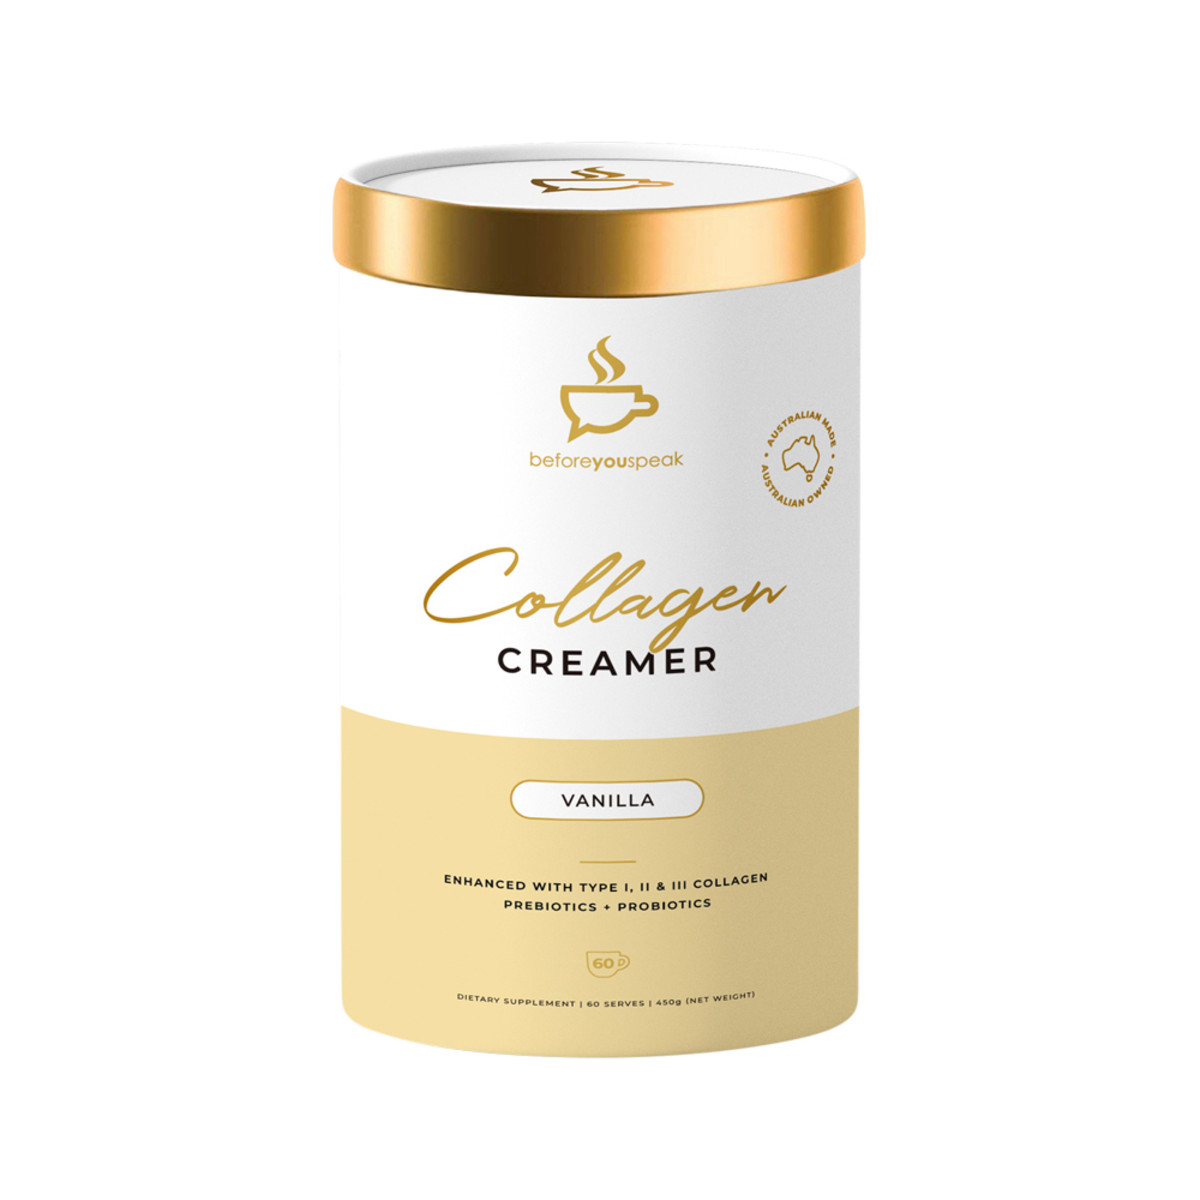 BEFORE YOU SPEAK - Collagen Creamer Vanilla